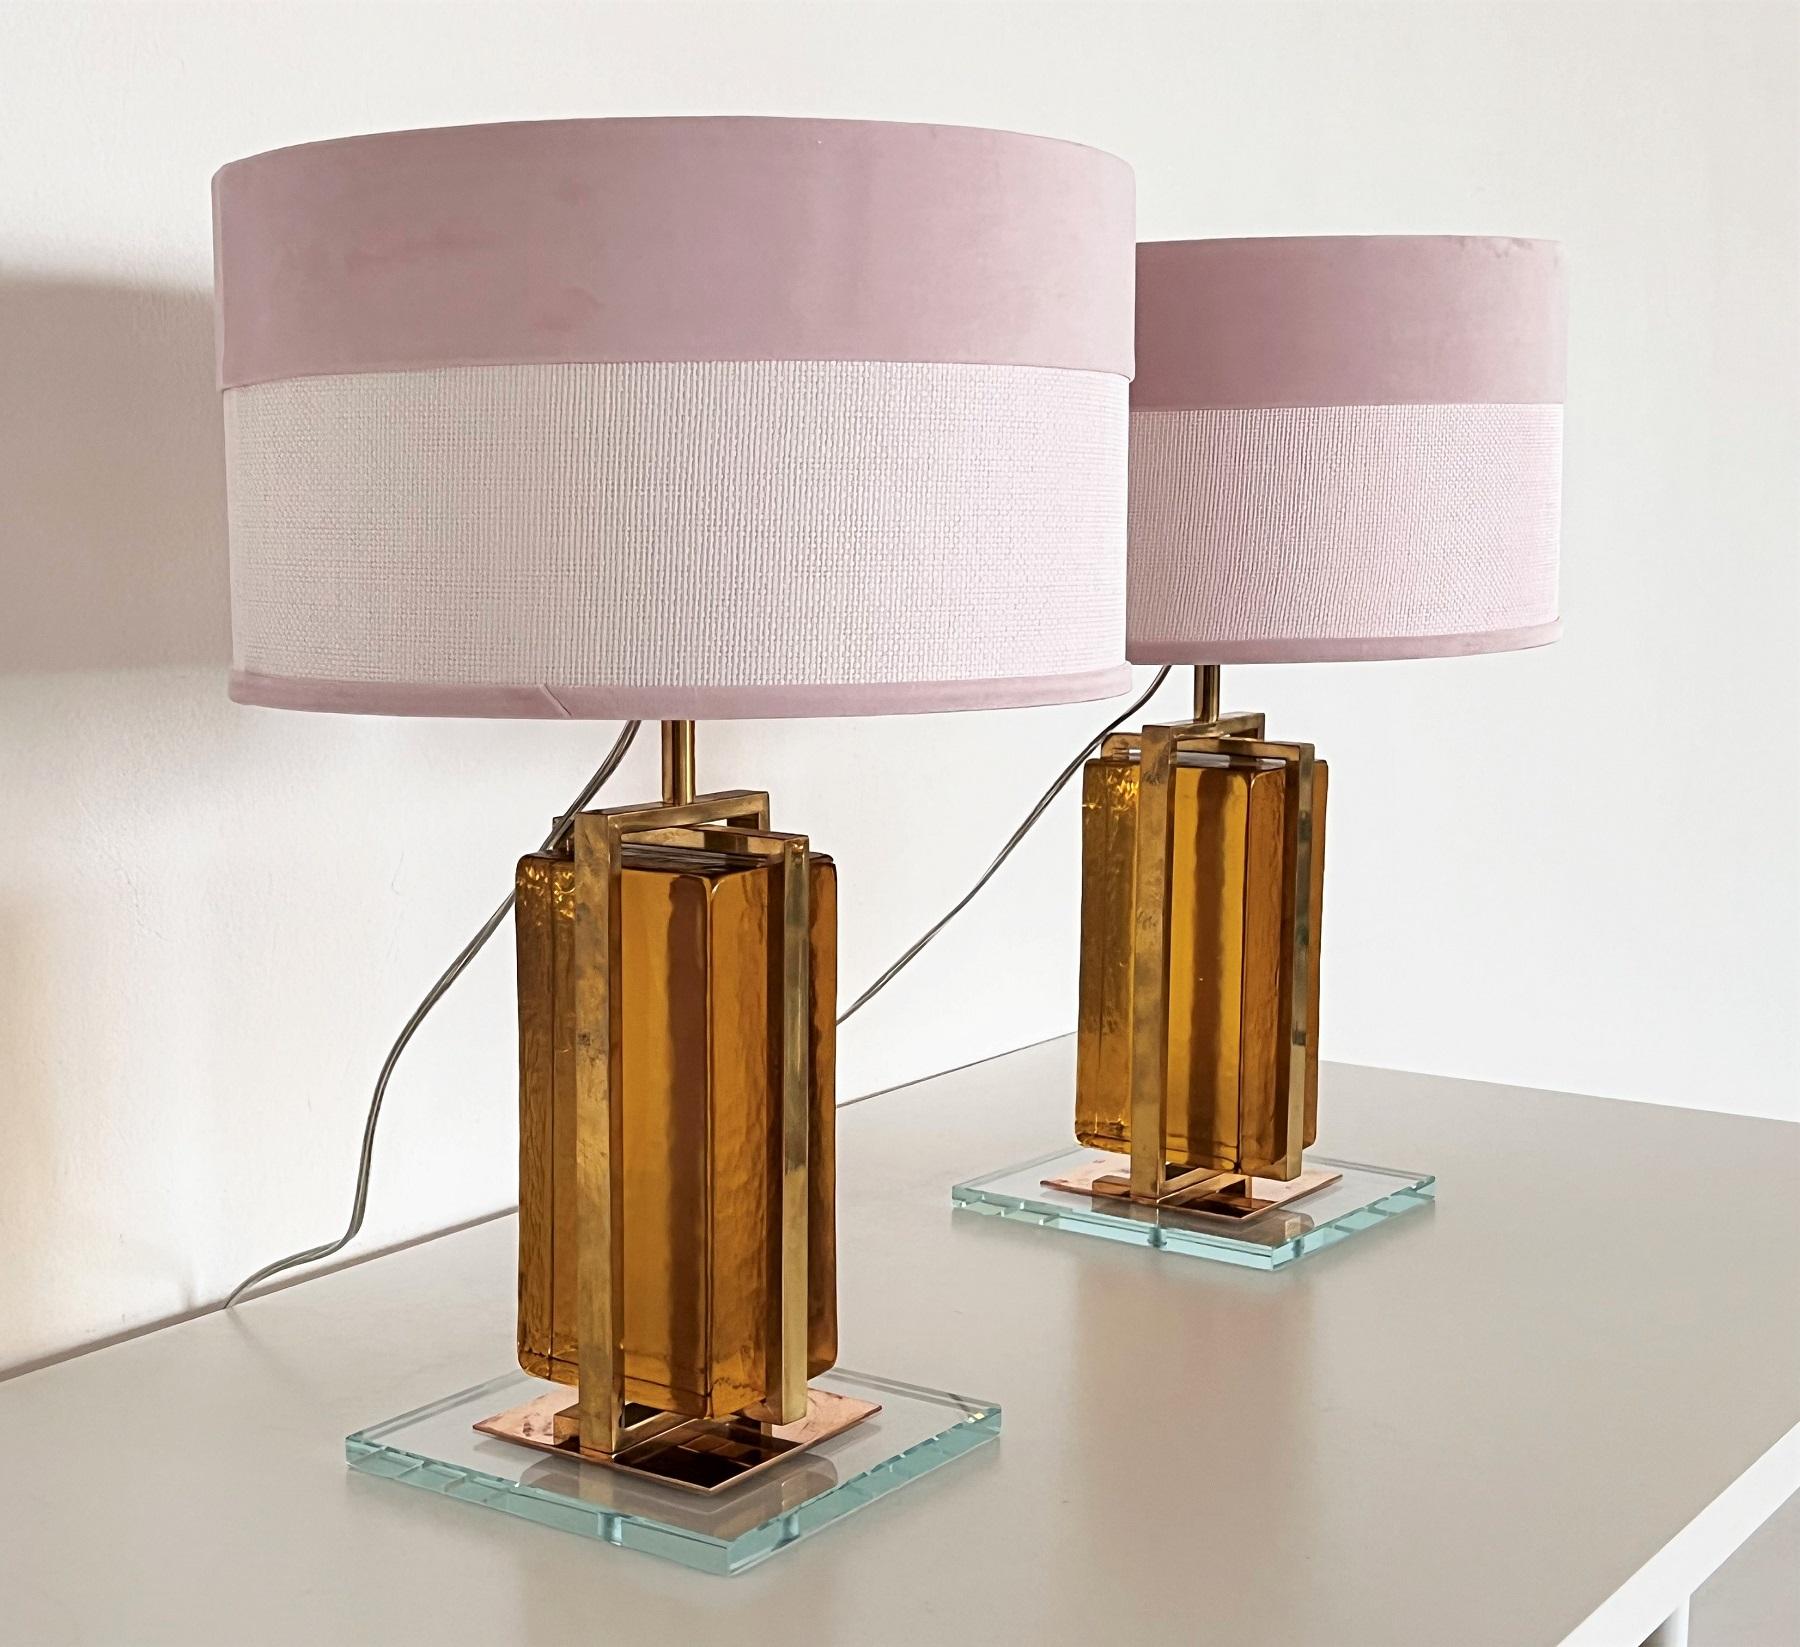 Magnifique paire de lampes modernes en verre de Murano et en laiton. 
Fabriqué vers les années 2010. 
Parfait pour le design éclectique d'aujourd'hui, il s'adapte à de nombreux styles. 
Les blocs de verre sont fermés à l'intérieur d'une cage en